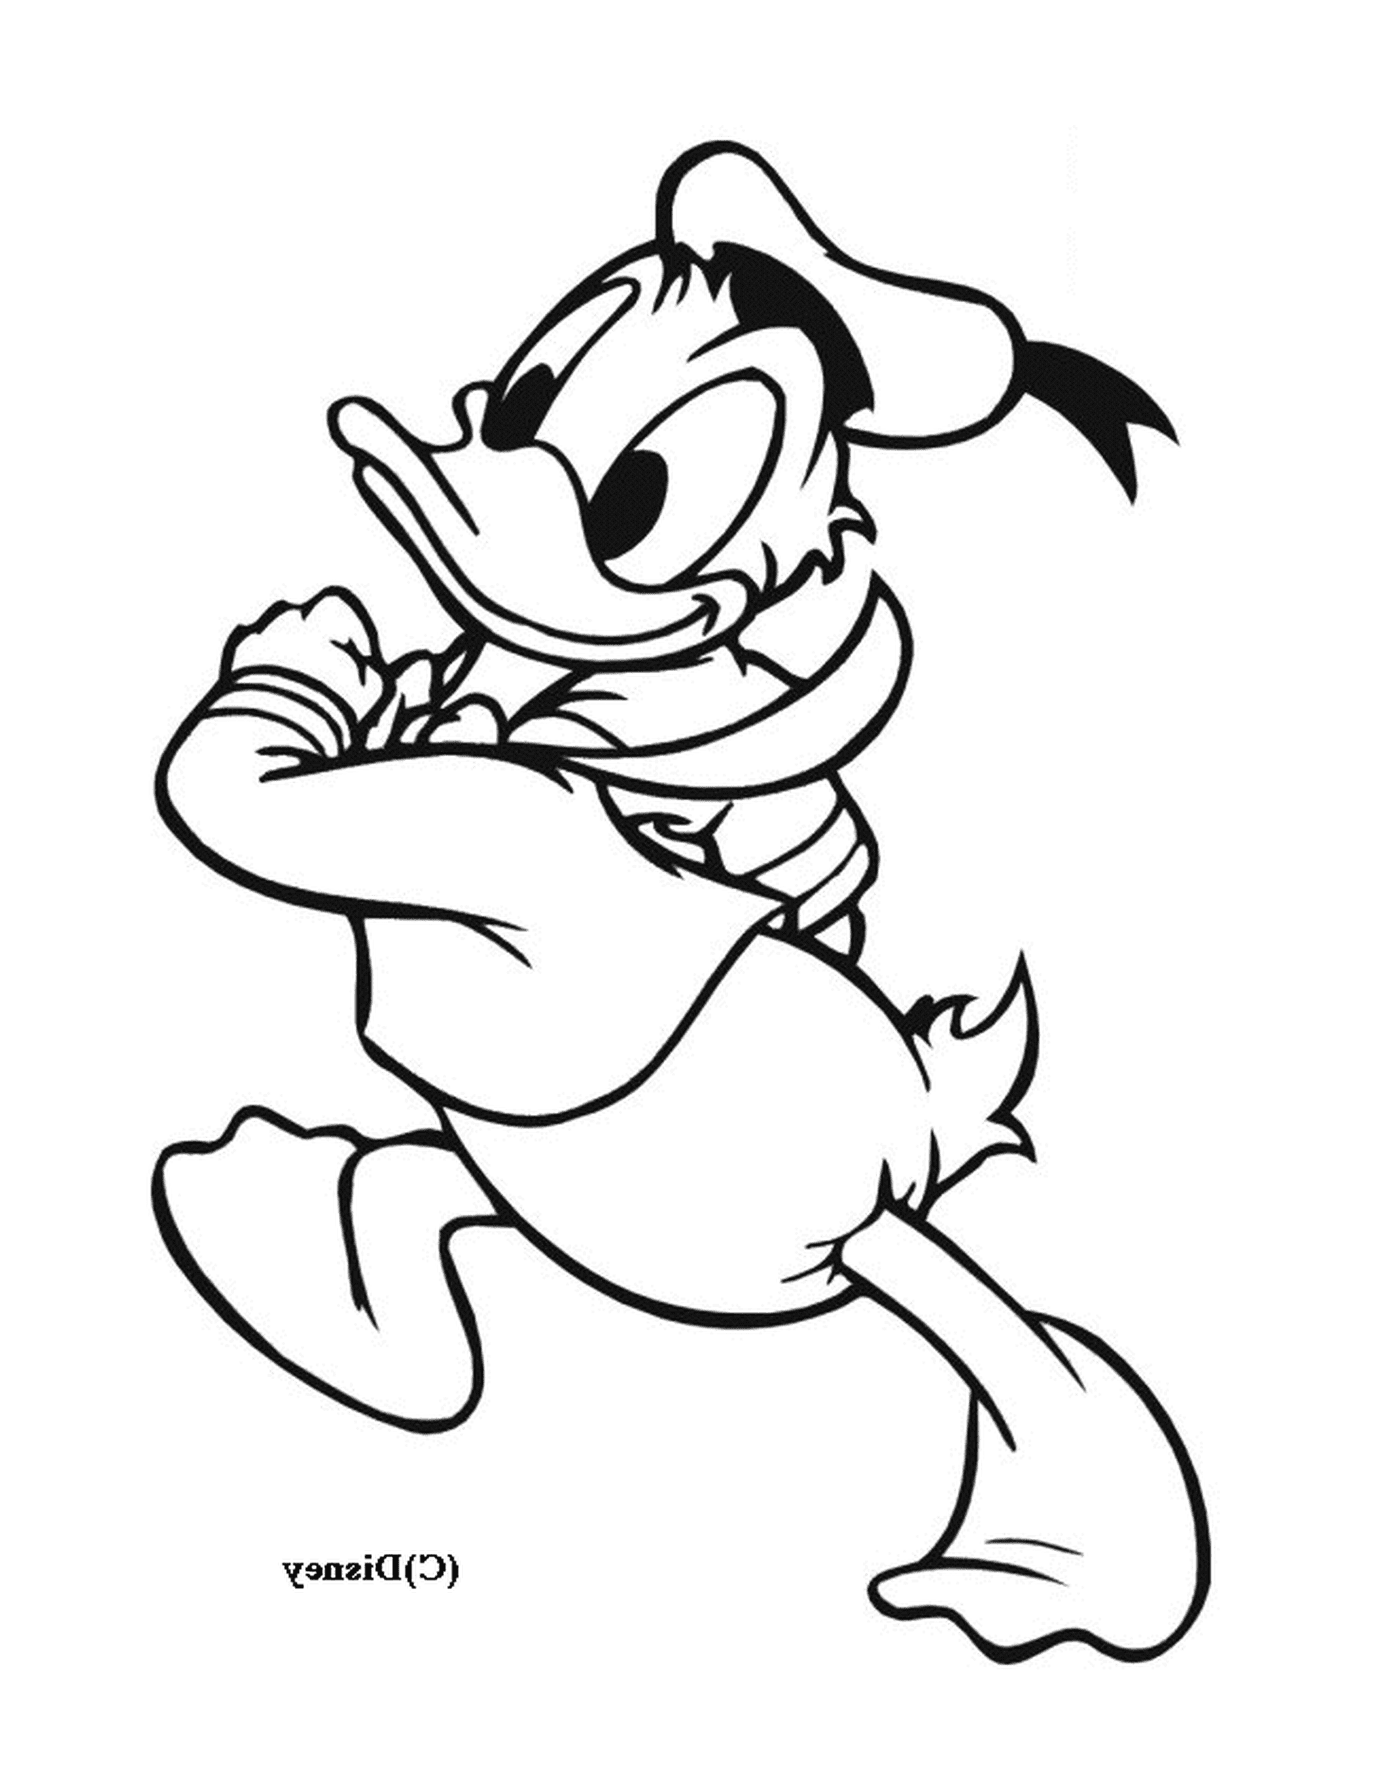  El Pato Donald corre felizmente con una cuerda 